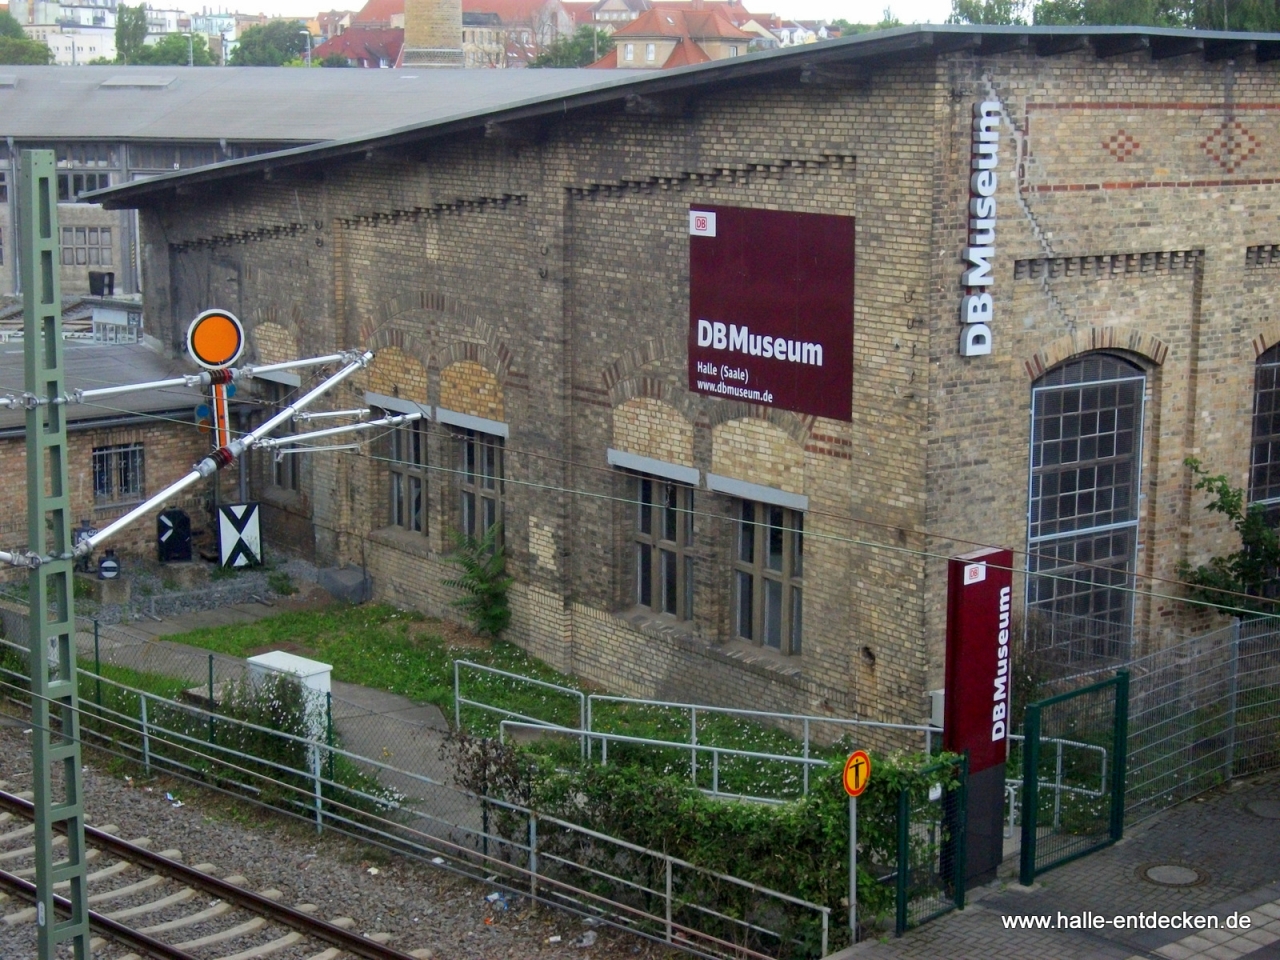 DB-Museum von der Berliner Straße in Halle (Saale) gesehen - Eingang